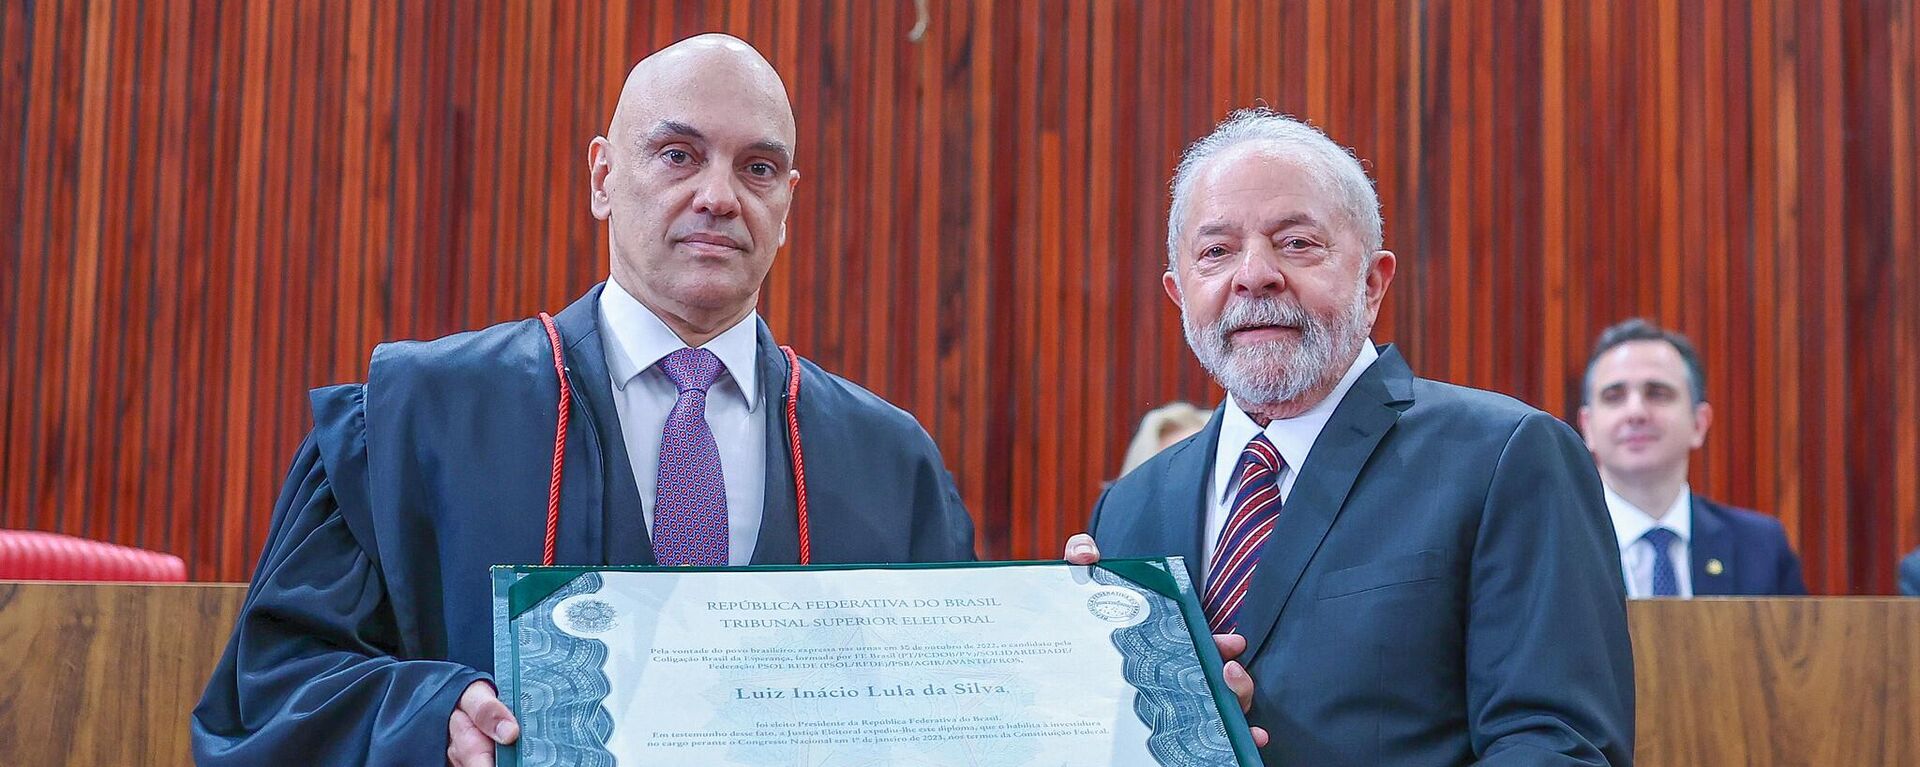 O presidente eleito Luiz Inácio Lula da Silva (PT) é diplomado pelo ministro Alexandre de Moraes, presidente do Tribunal Superior Eleitoral (TSE) - Sputnik Brasil, 1920, 28.12.2022